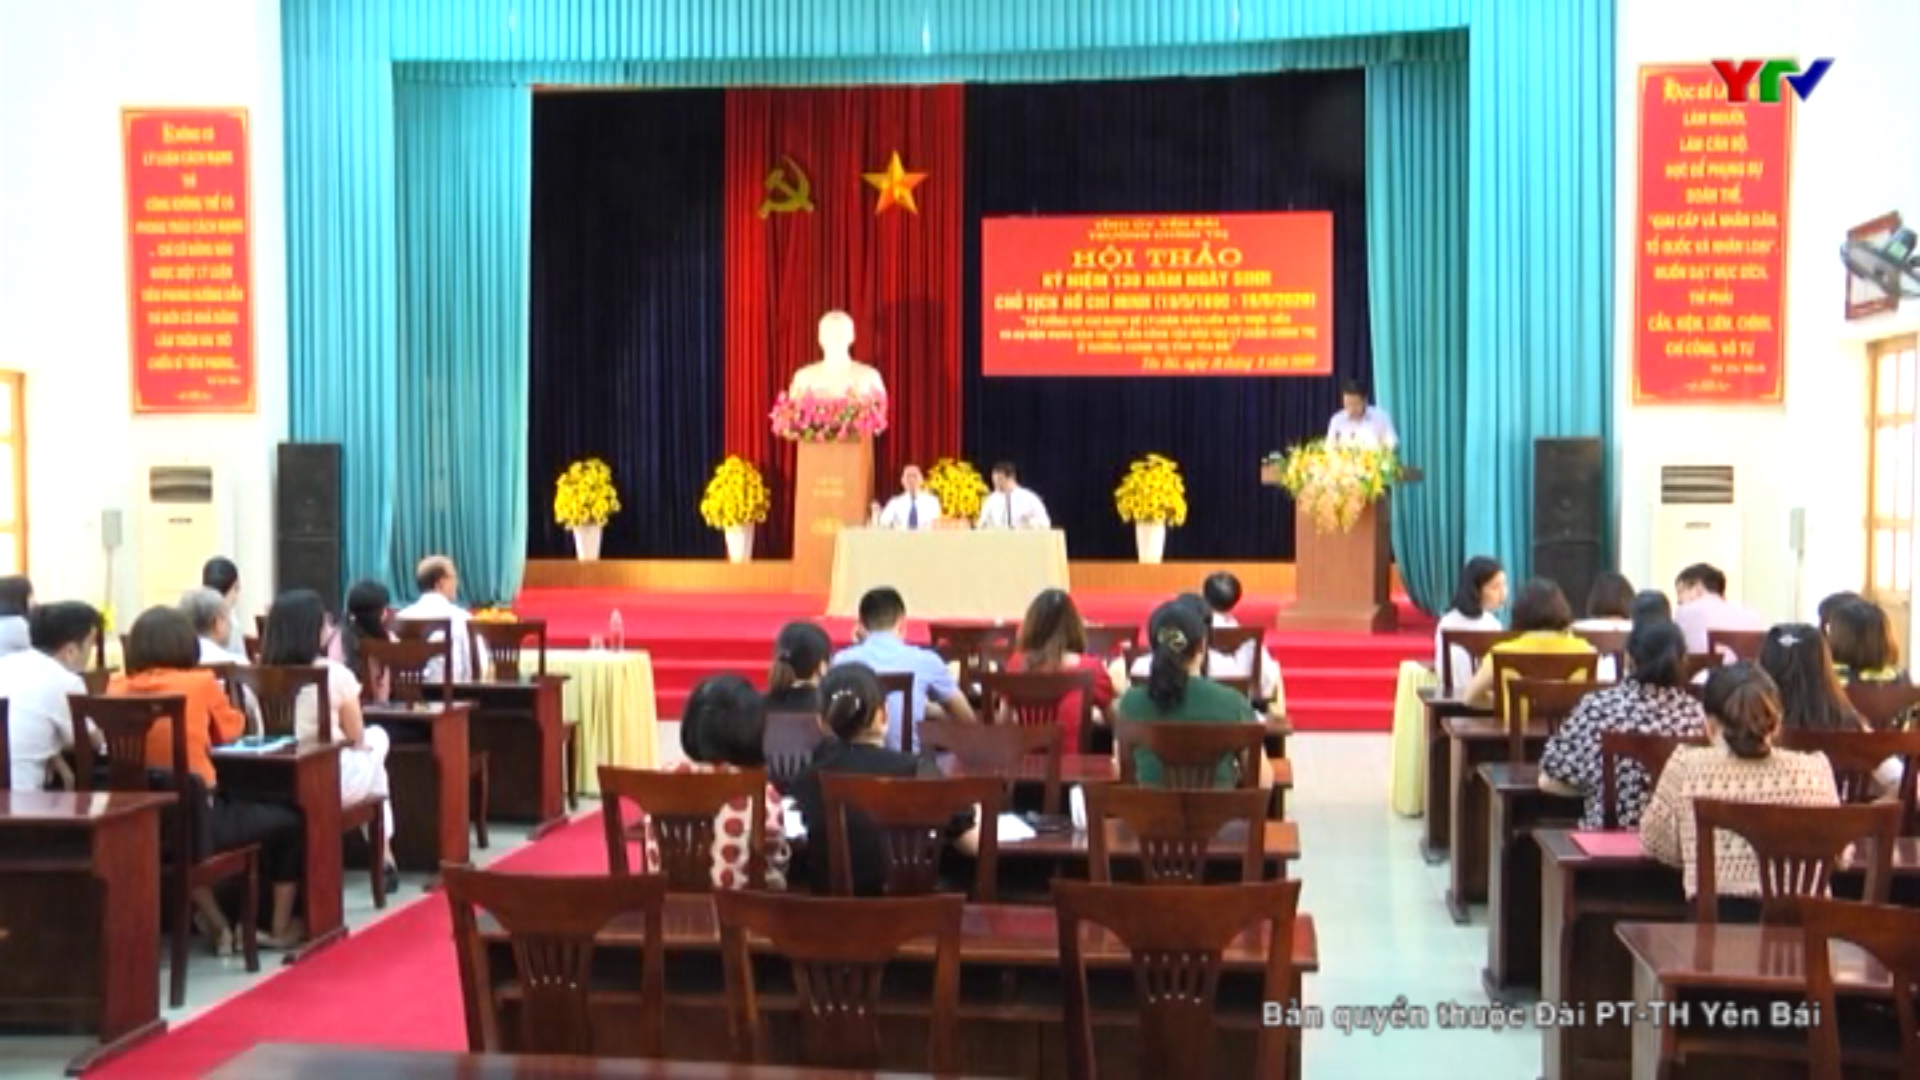 Hội thảo kỷ niệm 130 năm ngày sinh Chủ tịch Hồ Chí Minh